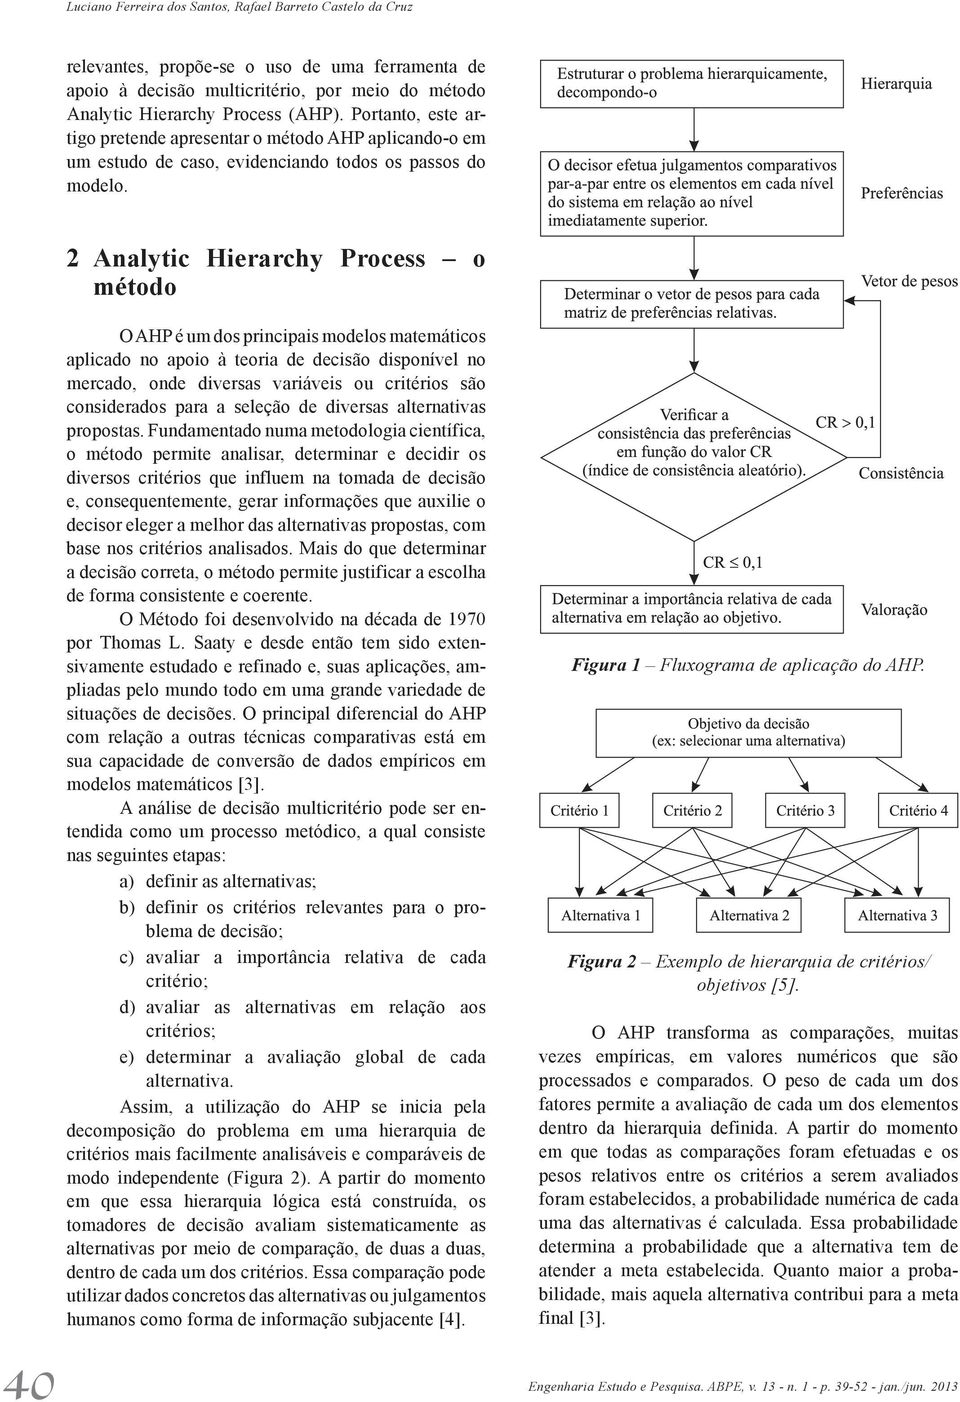 2 Analytic Hierarchy Process o método 40 Engenharia O AHP é um dos principais modelos matemáticos aplicado no apoio à teoria de decisão disponível no mercado, onde diversas variáveis ou critérios são